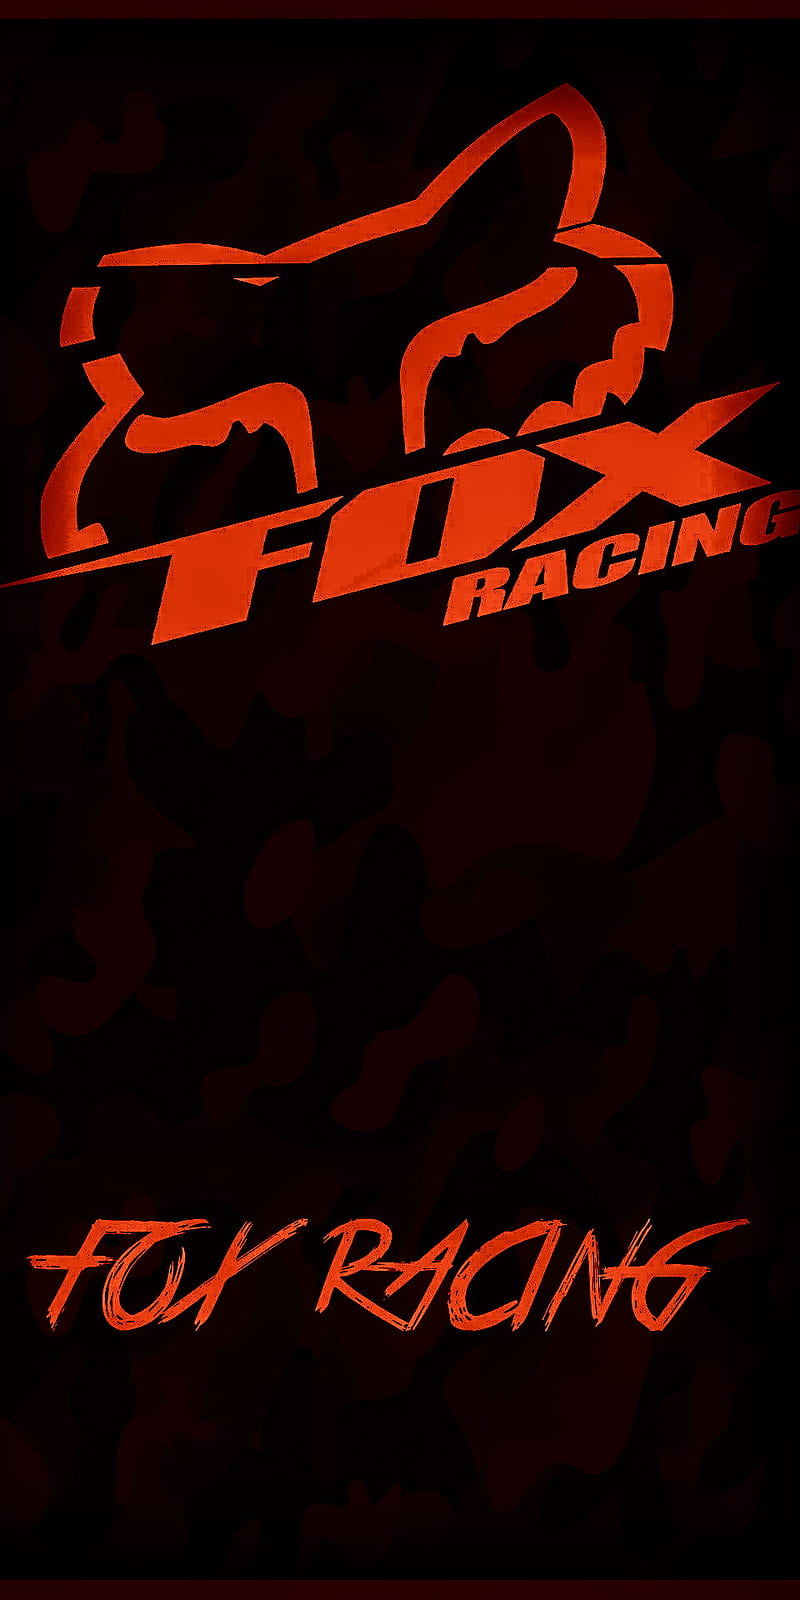 Download Colorful Fox Racing Dirt Bike Logo Wallpaper